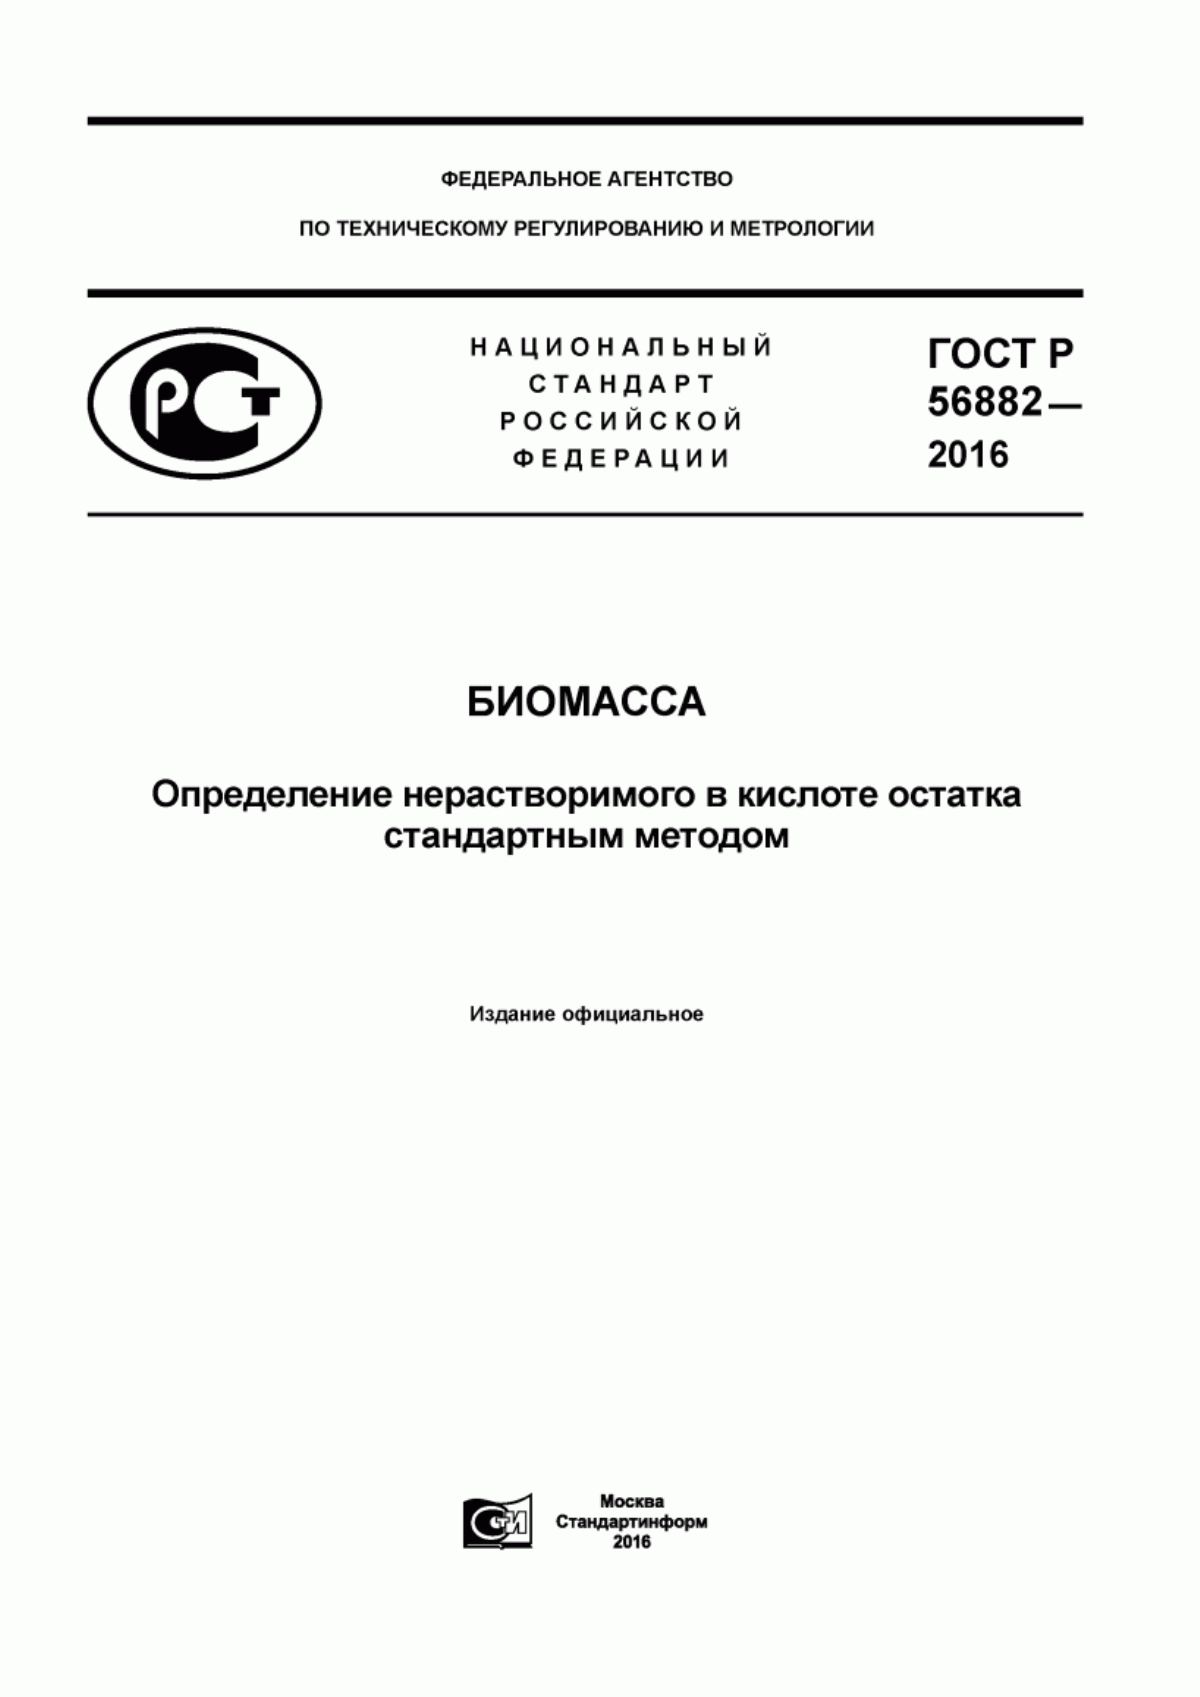 ГОСТ Р 56882-2016 Биомасса. Определение нерастворимого в кислоте остатка стандартным методом